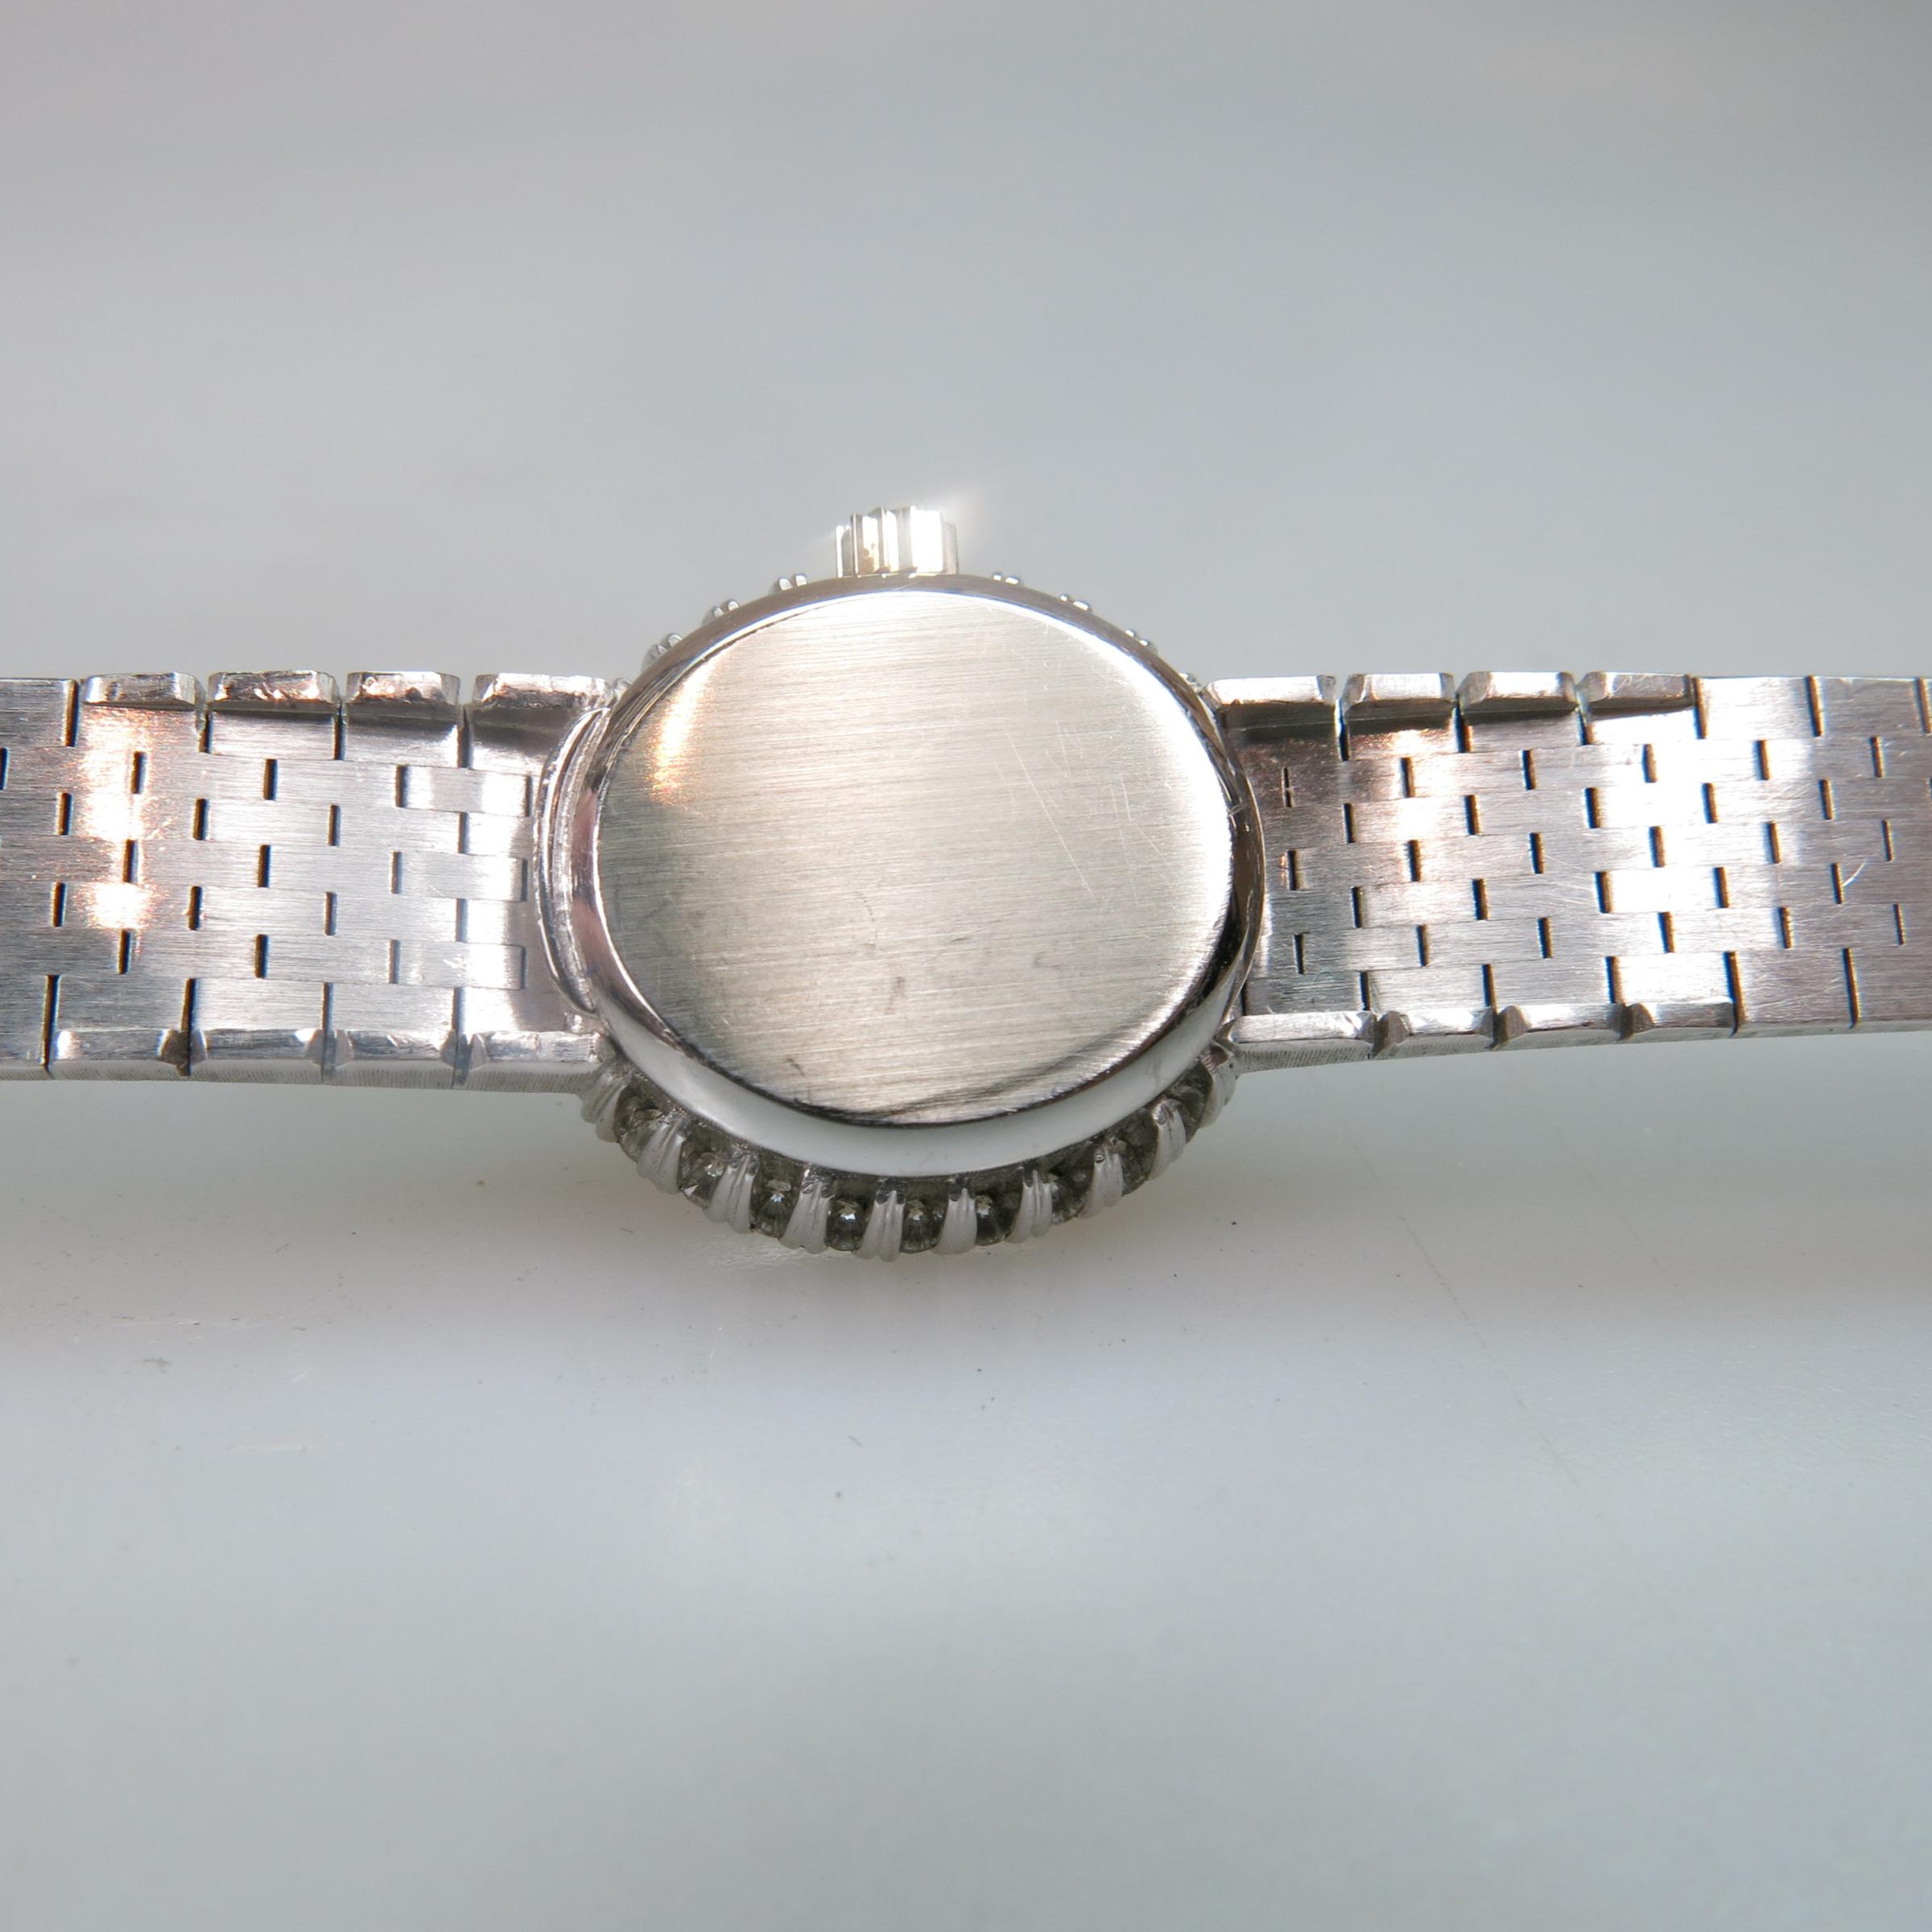 Lady's IWC Schaffhausen Wristwatch